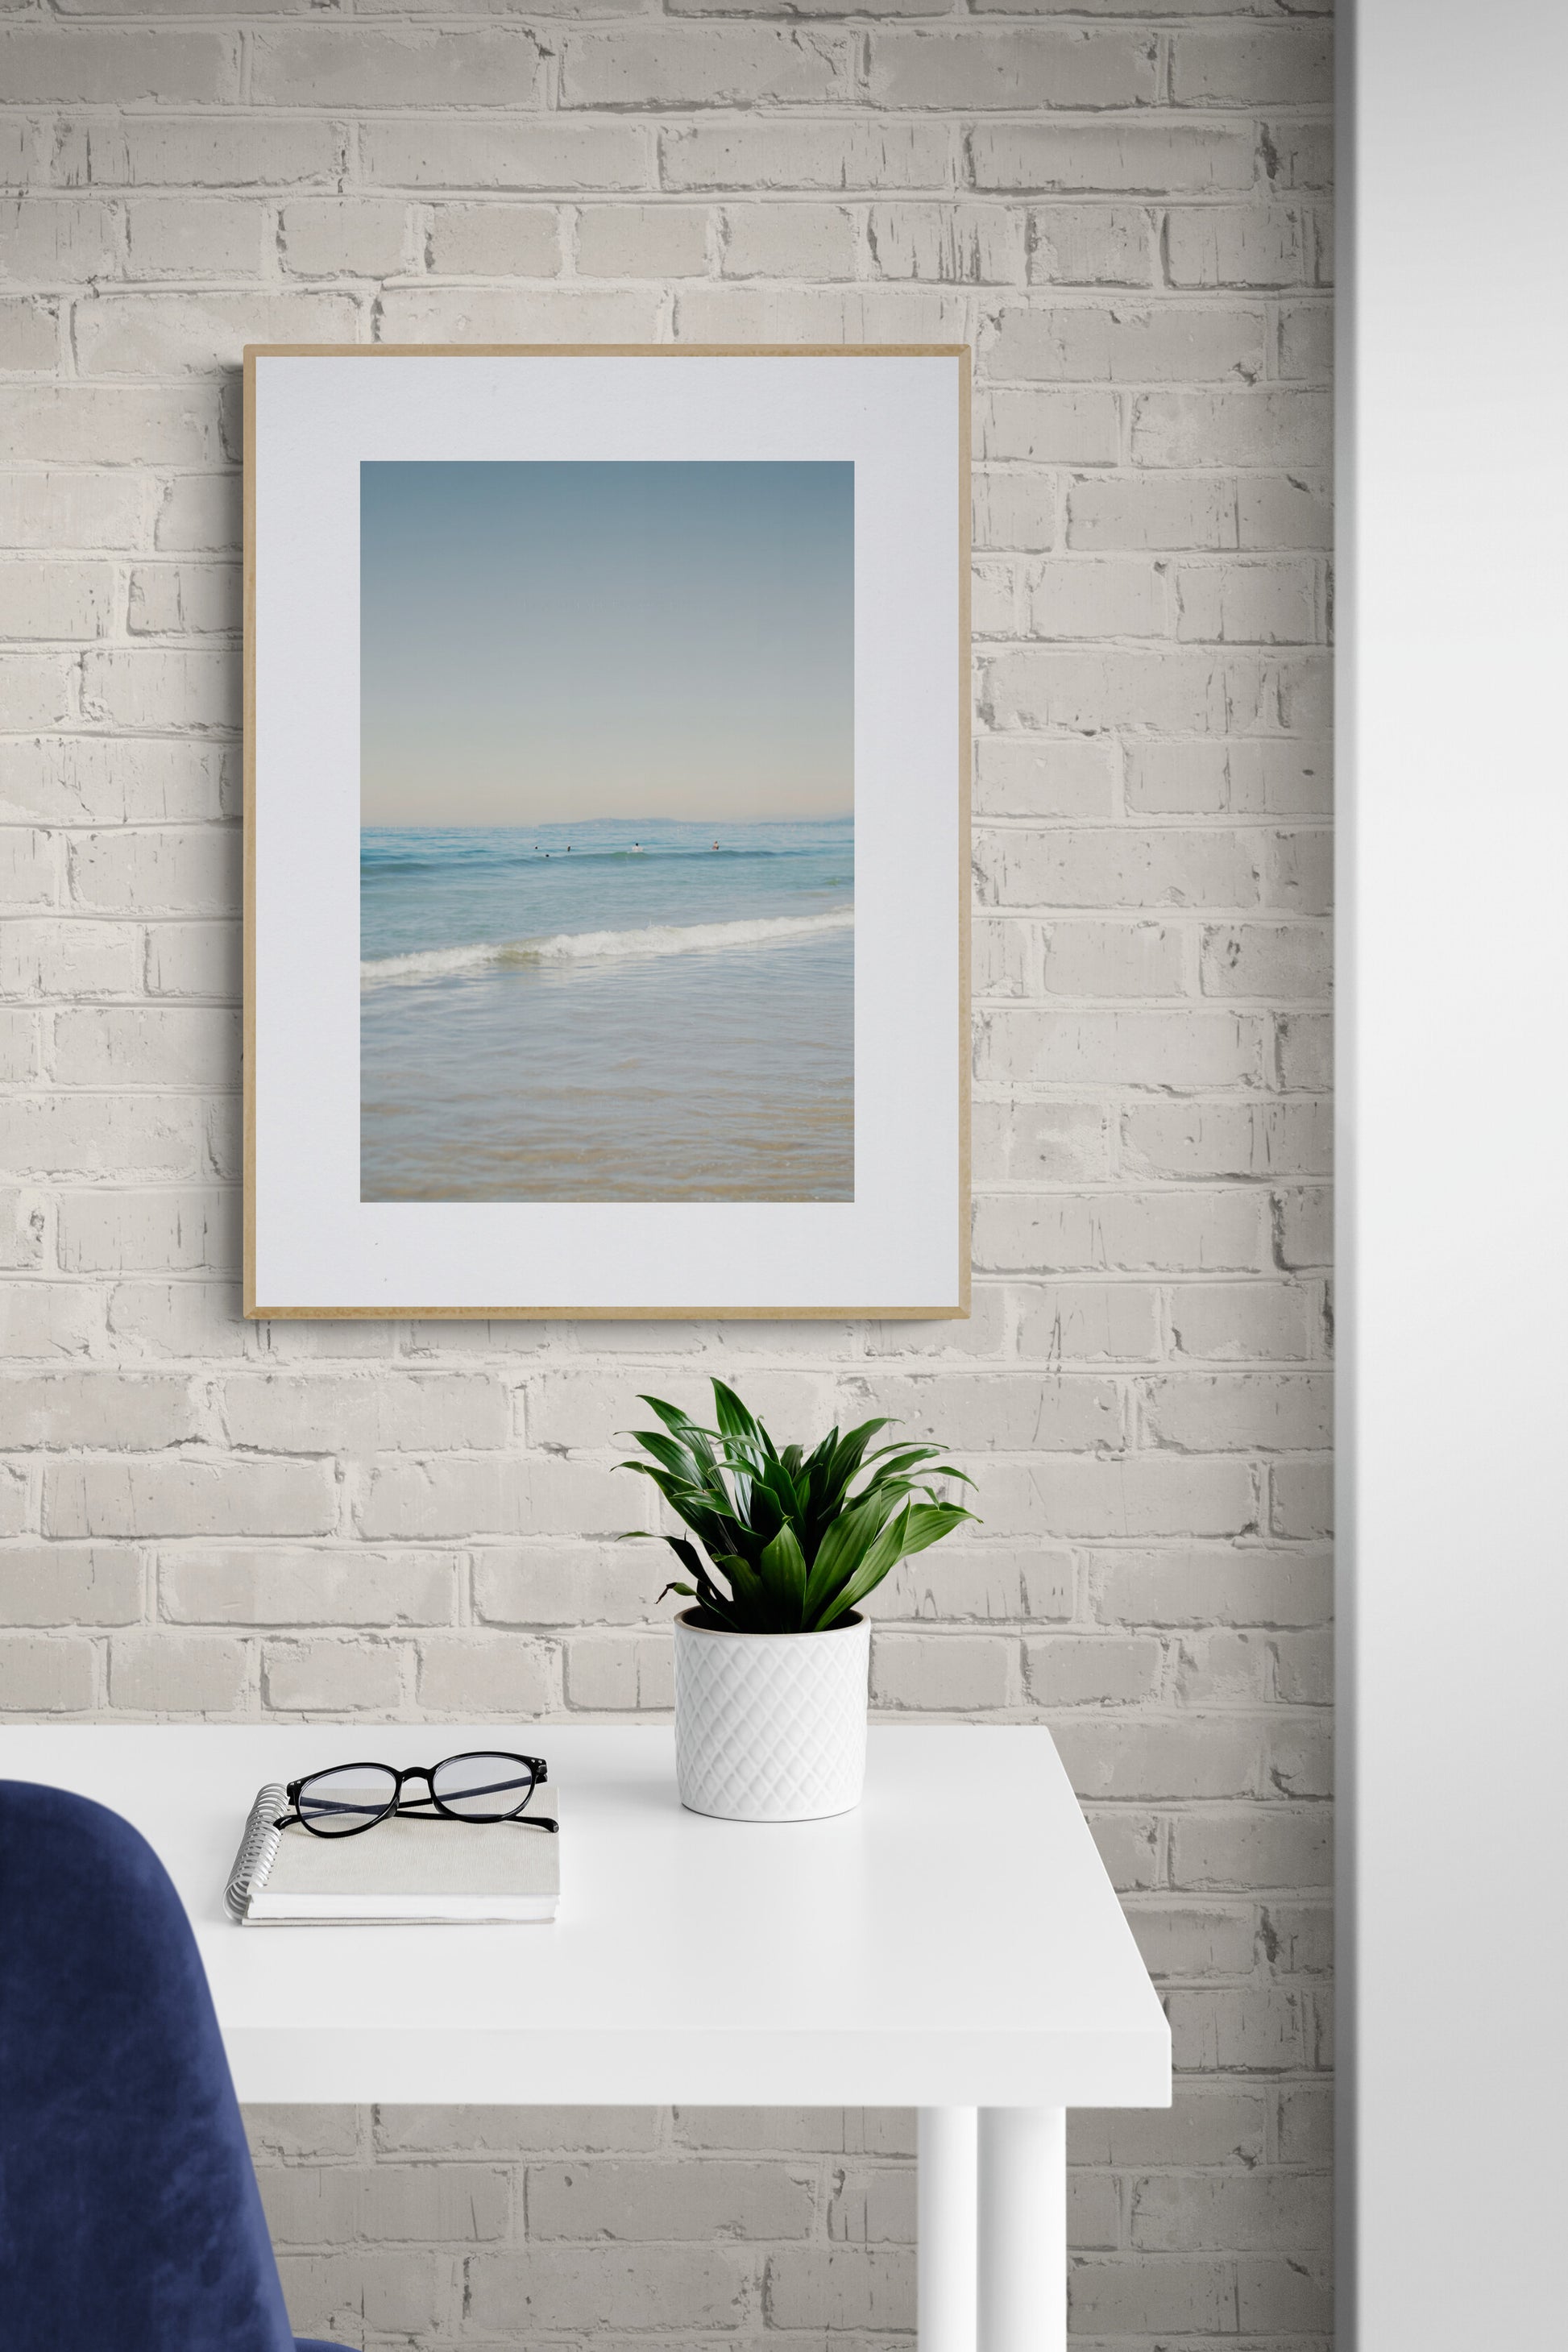 Carpinteria State Beach California Photograph as wall Art in a home office